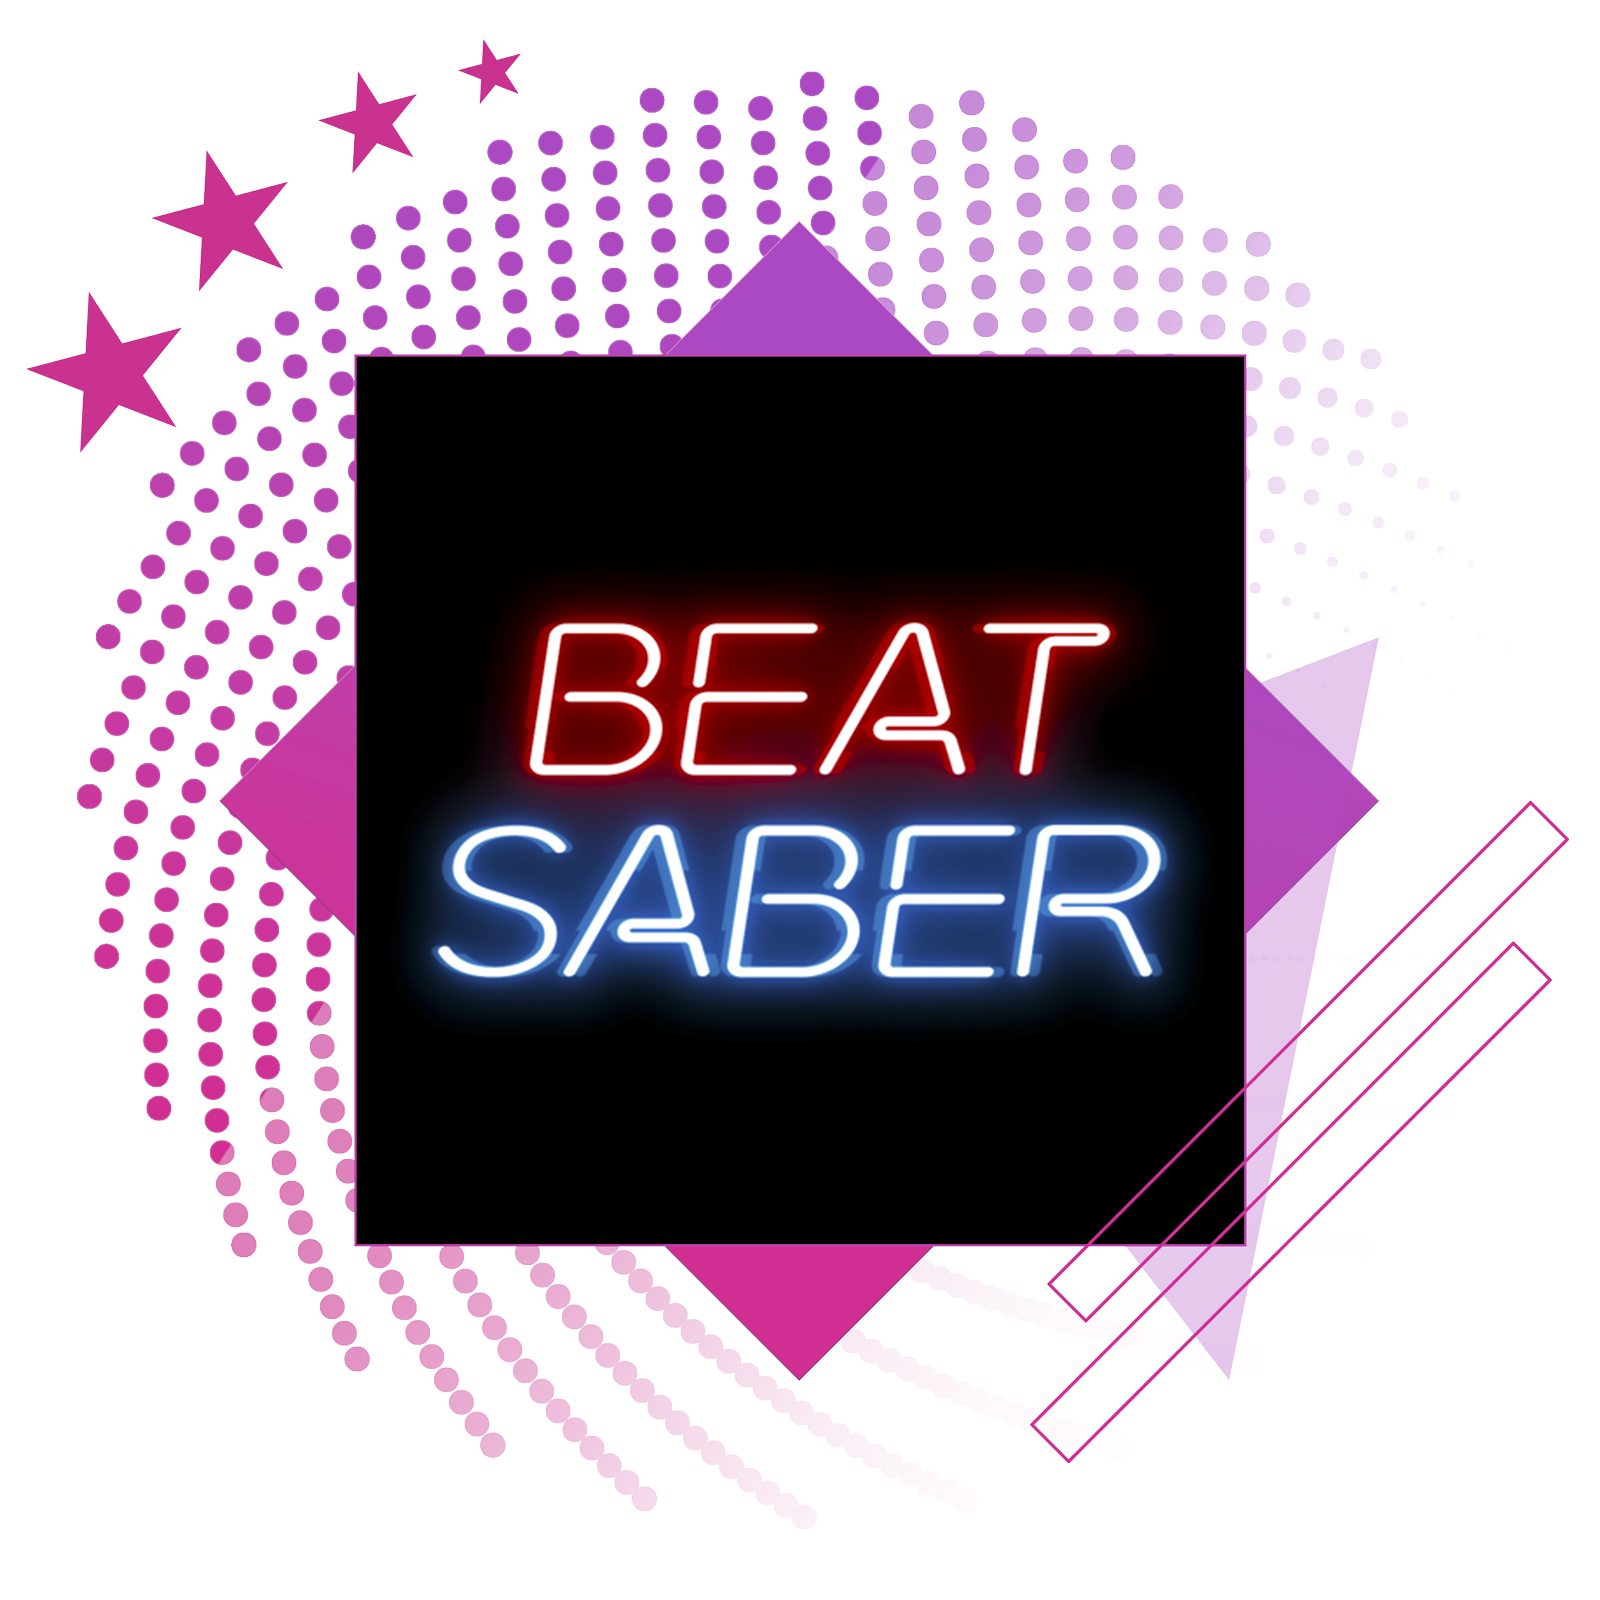 Bedste rytmespil-funktionsbillede med nøglegrafik fra Beat Saber.